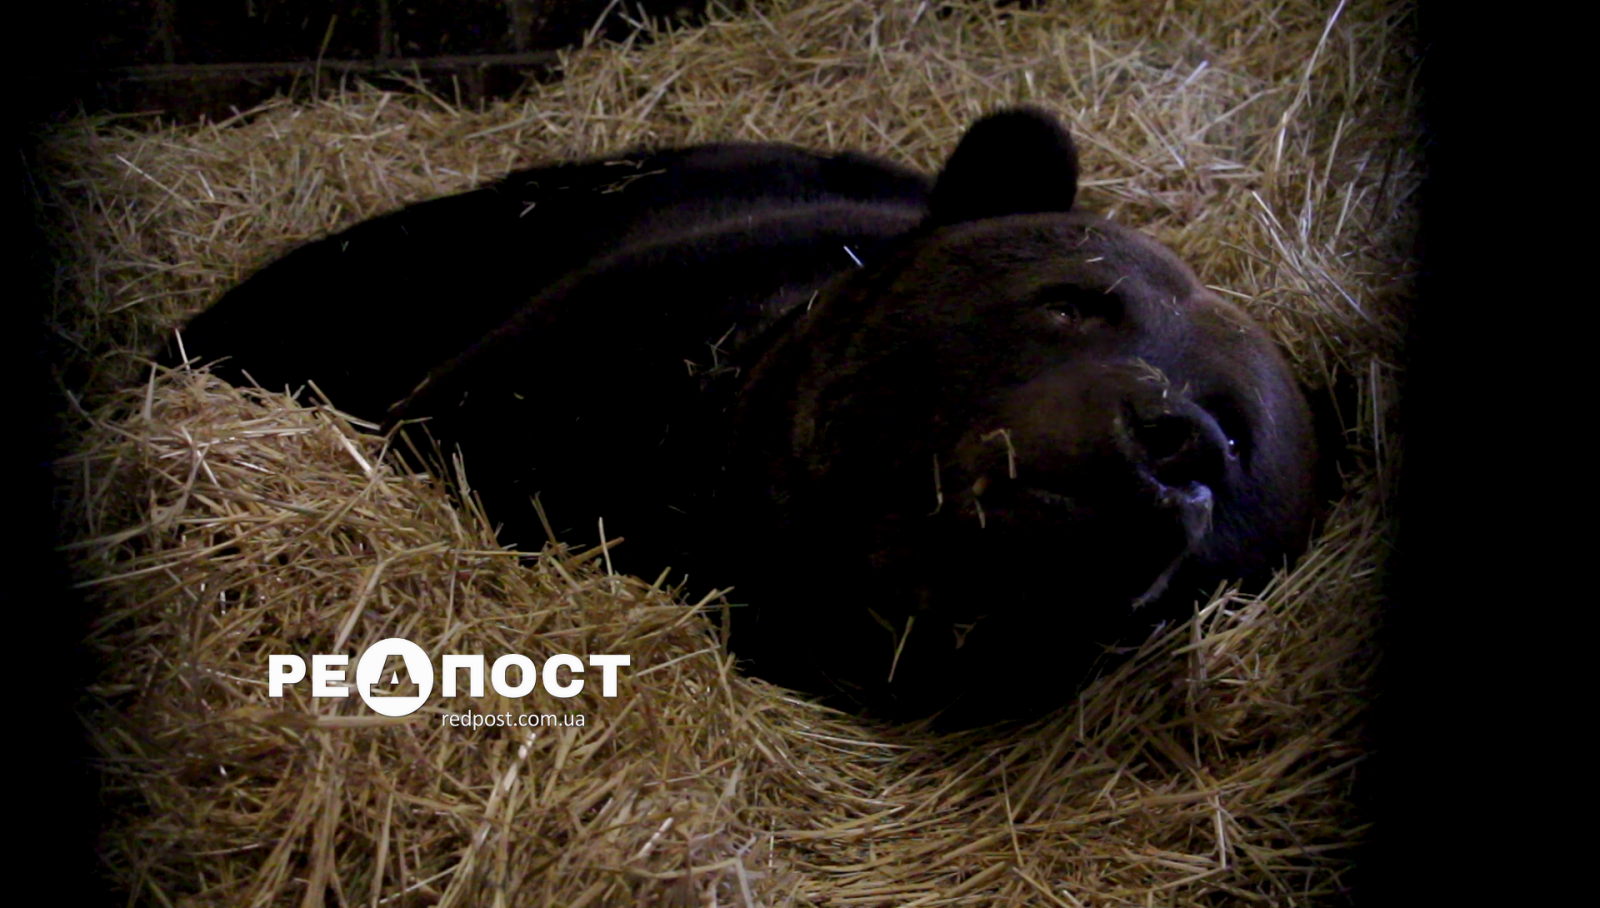 В Харьковском зоопарке медведи готовятся к зимнему сну. Новости Харькова